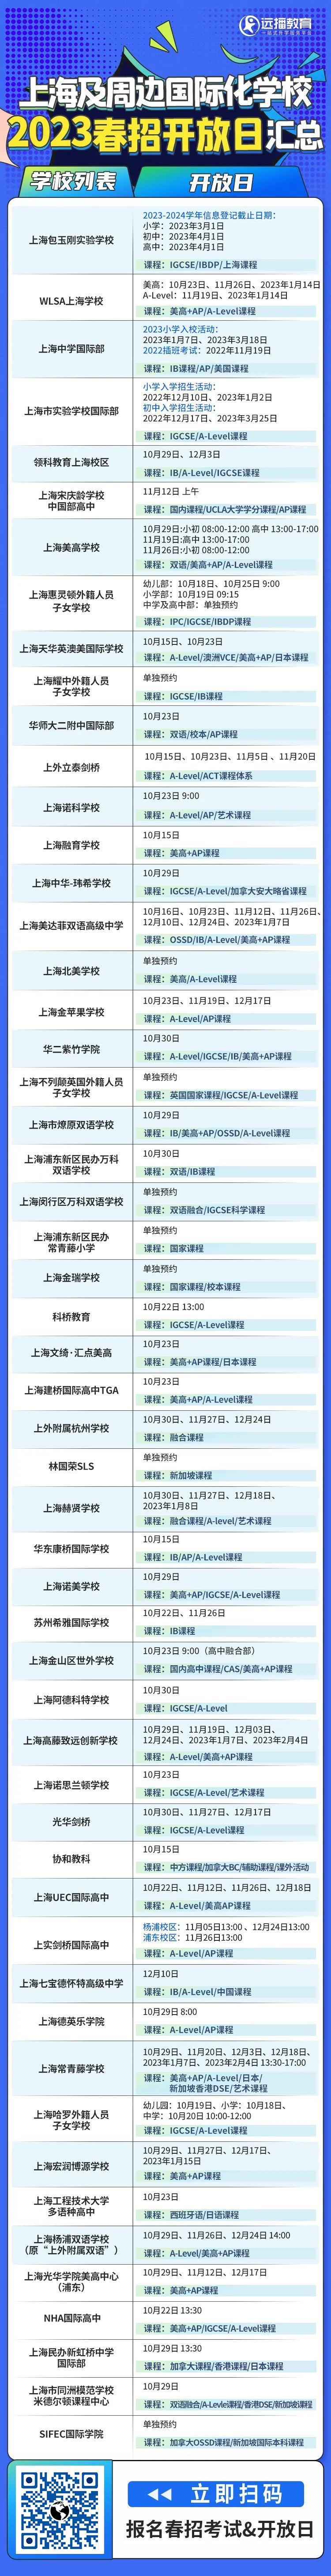 上海国际化学校50+学校2023春招开放日最新整理汇总一览